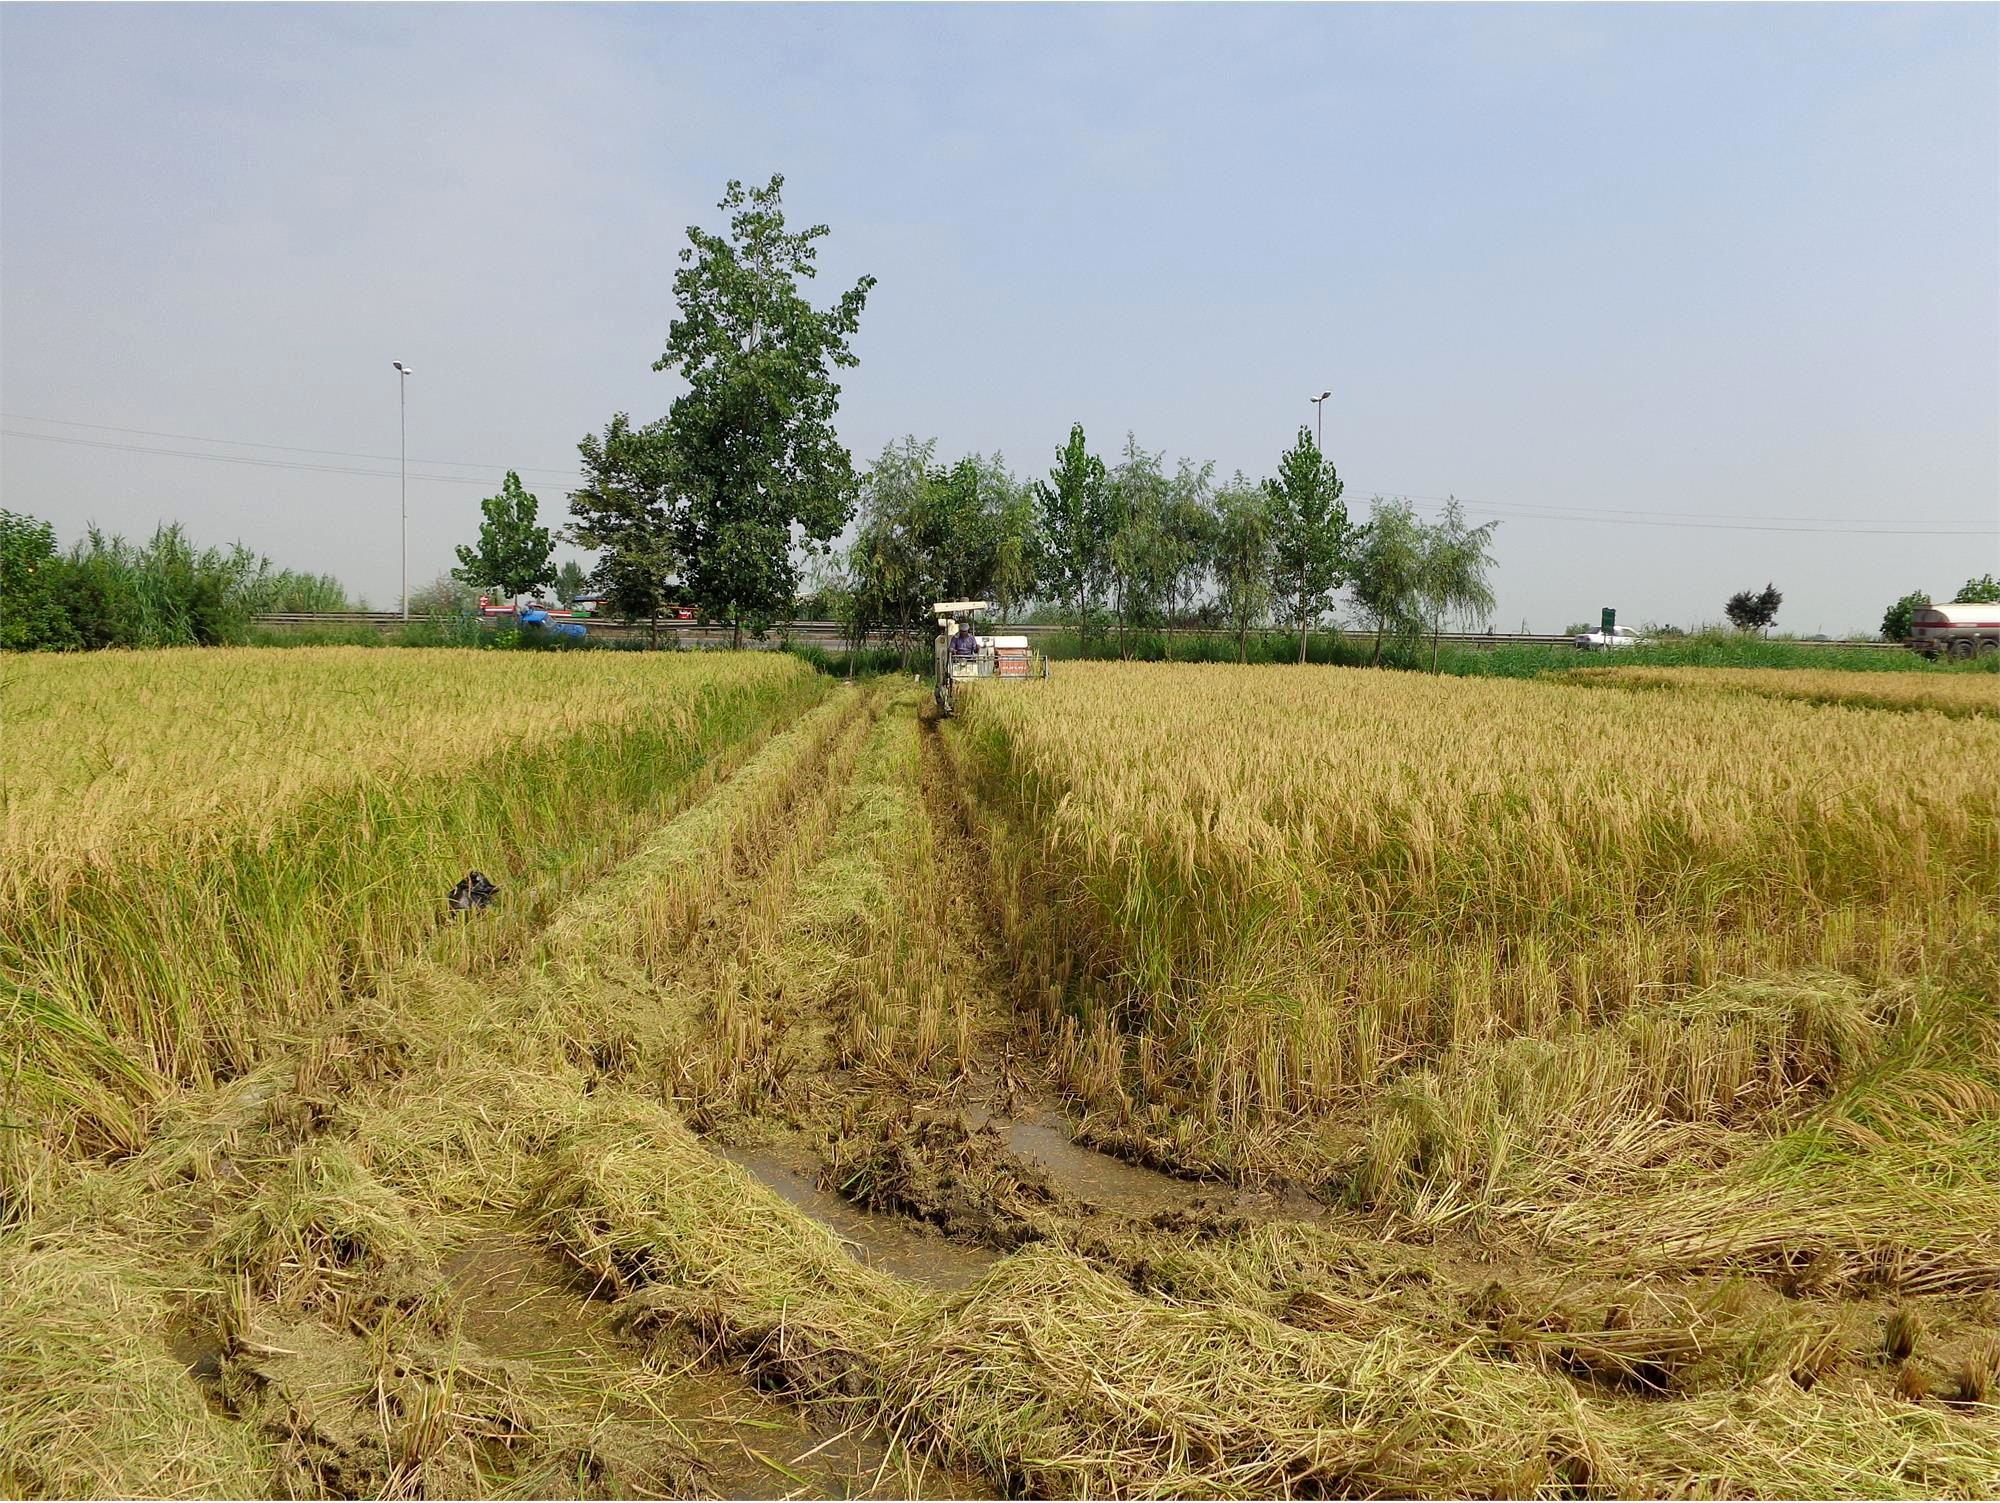 تولید 300 هزار تن شلتوک برنج در بابل